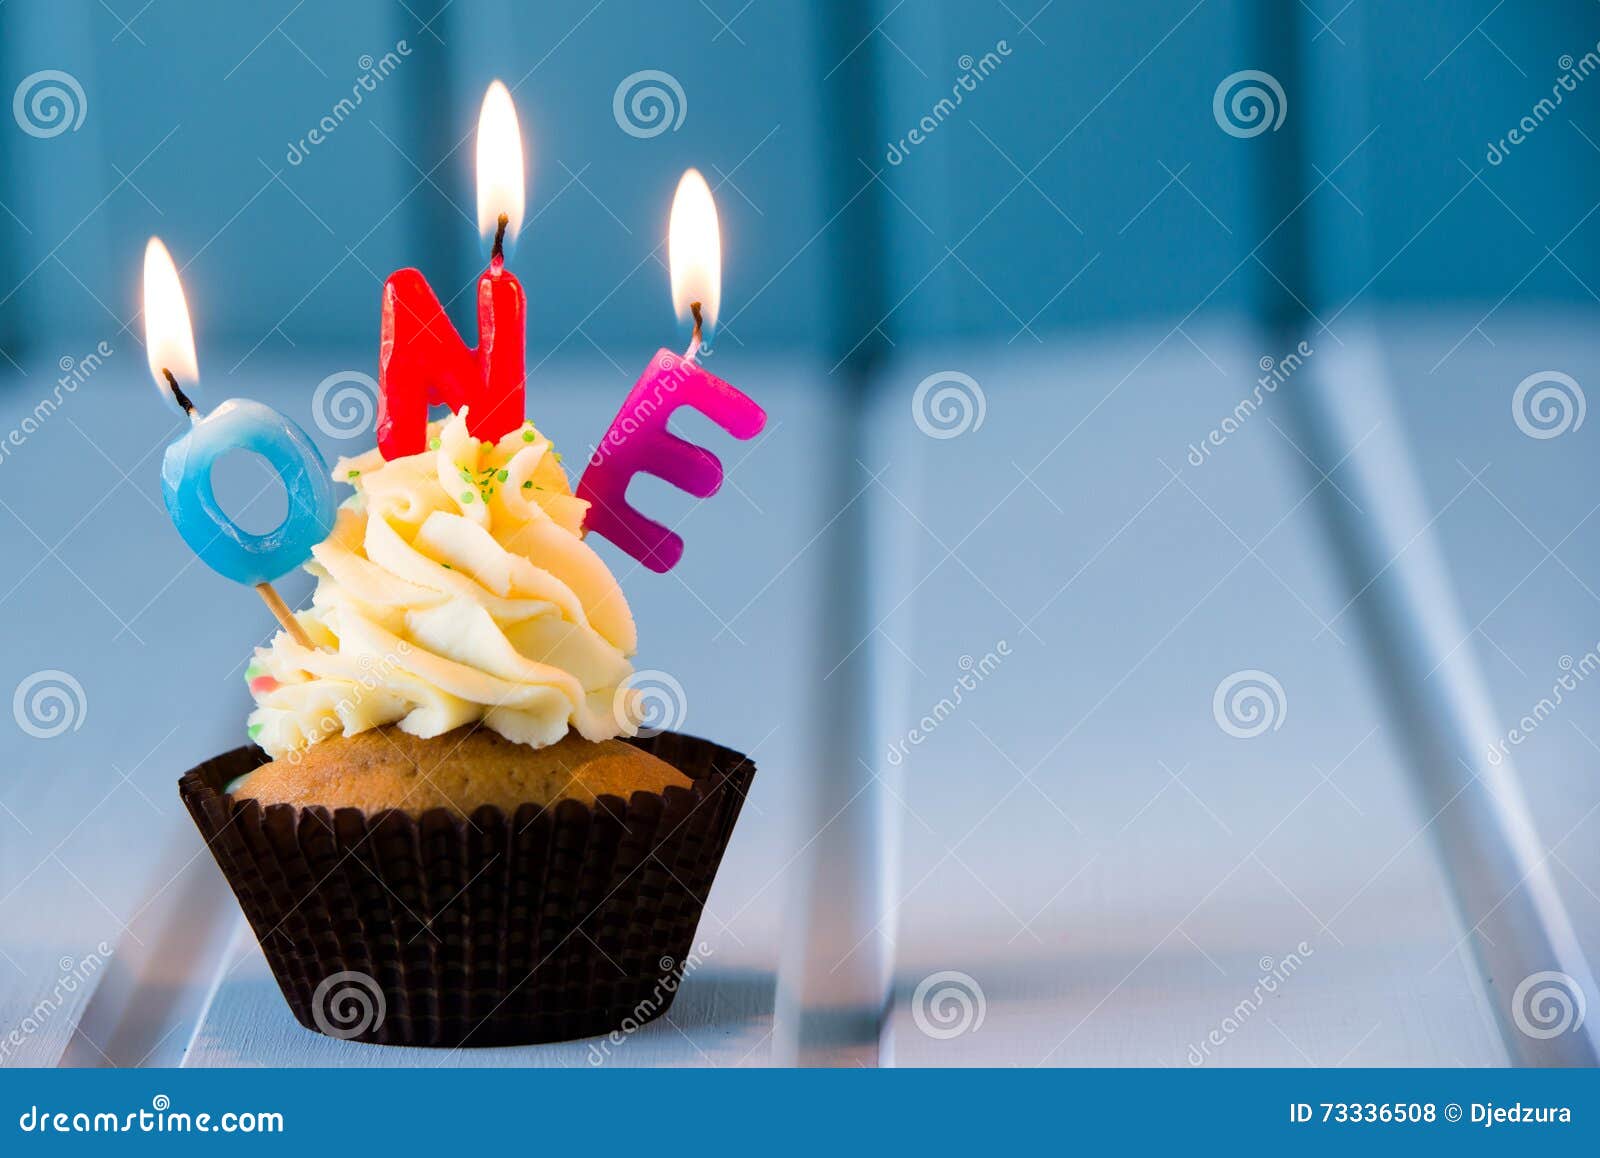 1 vela, una vela, 1 vela de cumpleaños, vela de primer cumpleaños, una vela  de primer cumpleaños, 1 vela para primer cumpleaños, velas de cumpleaños